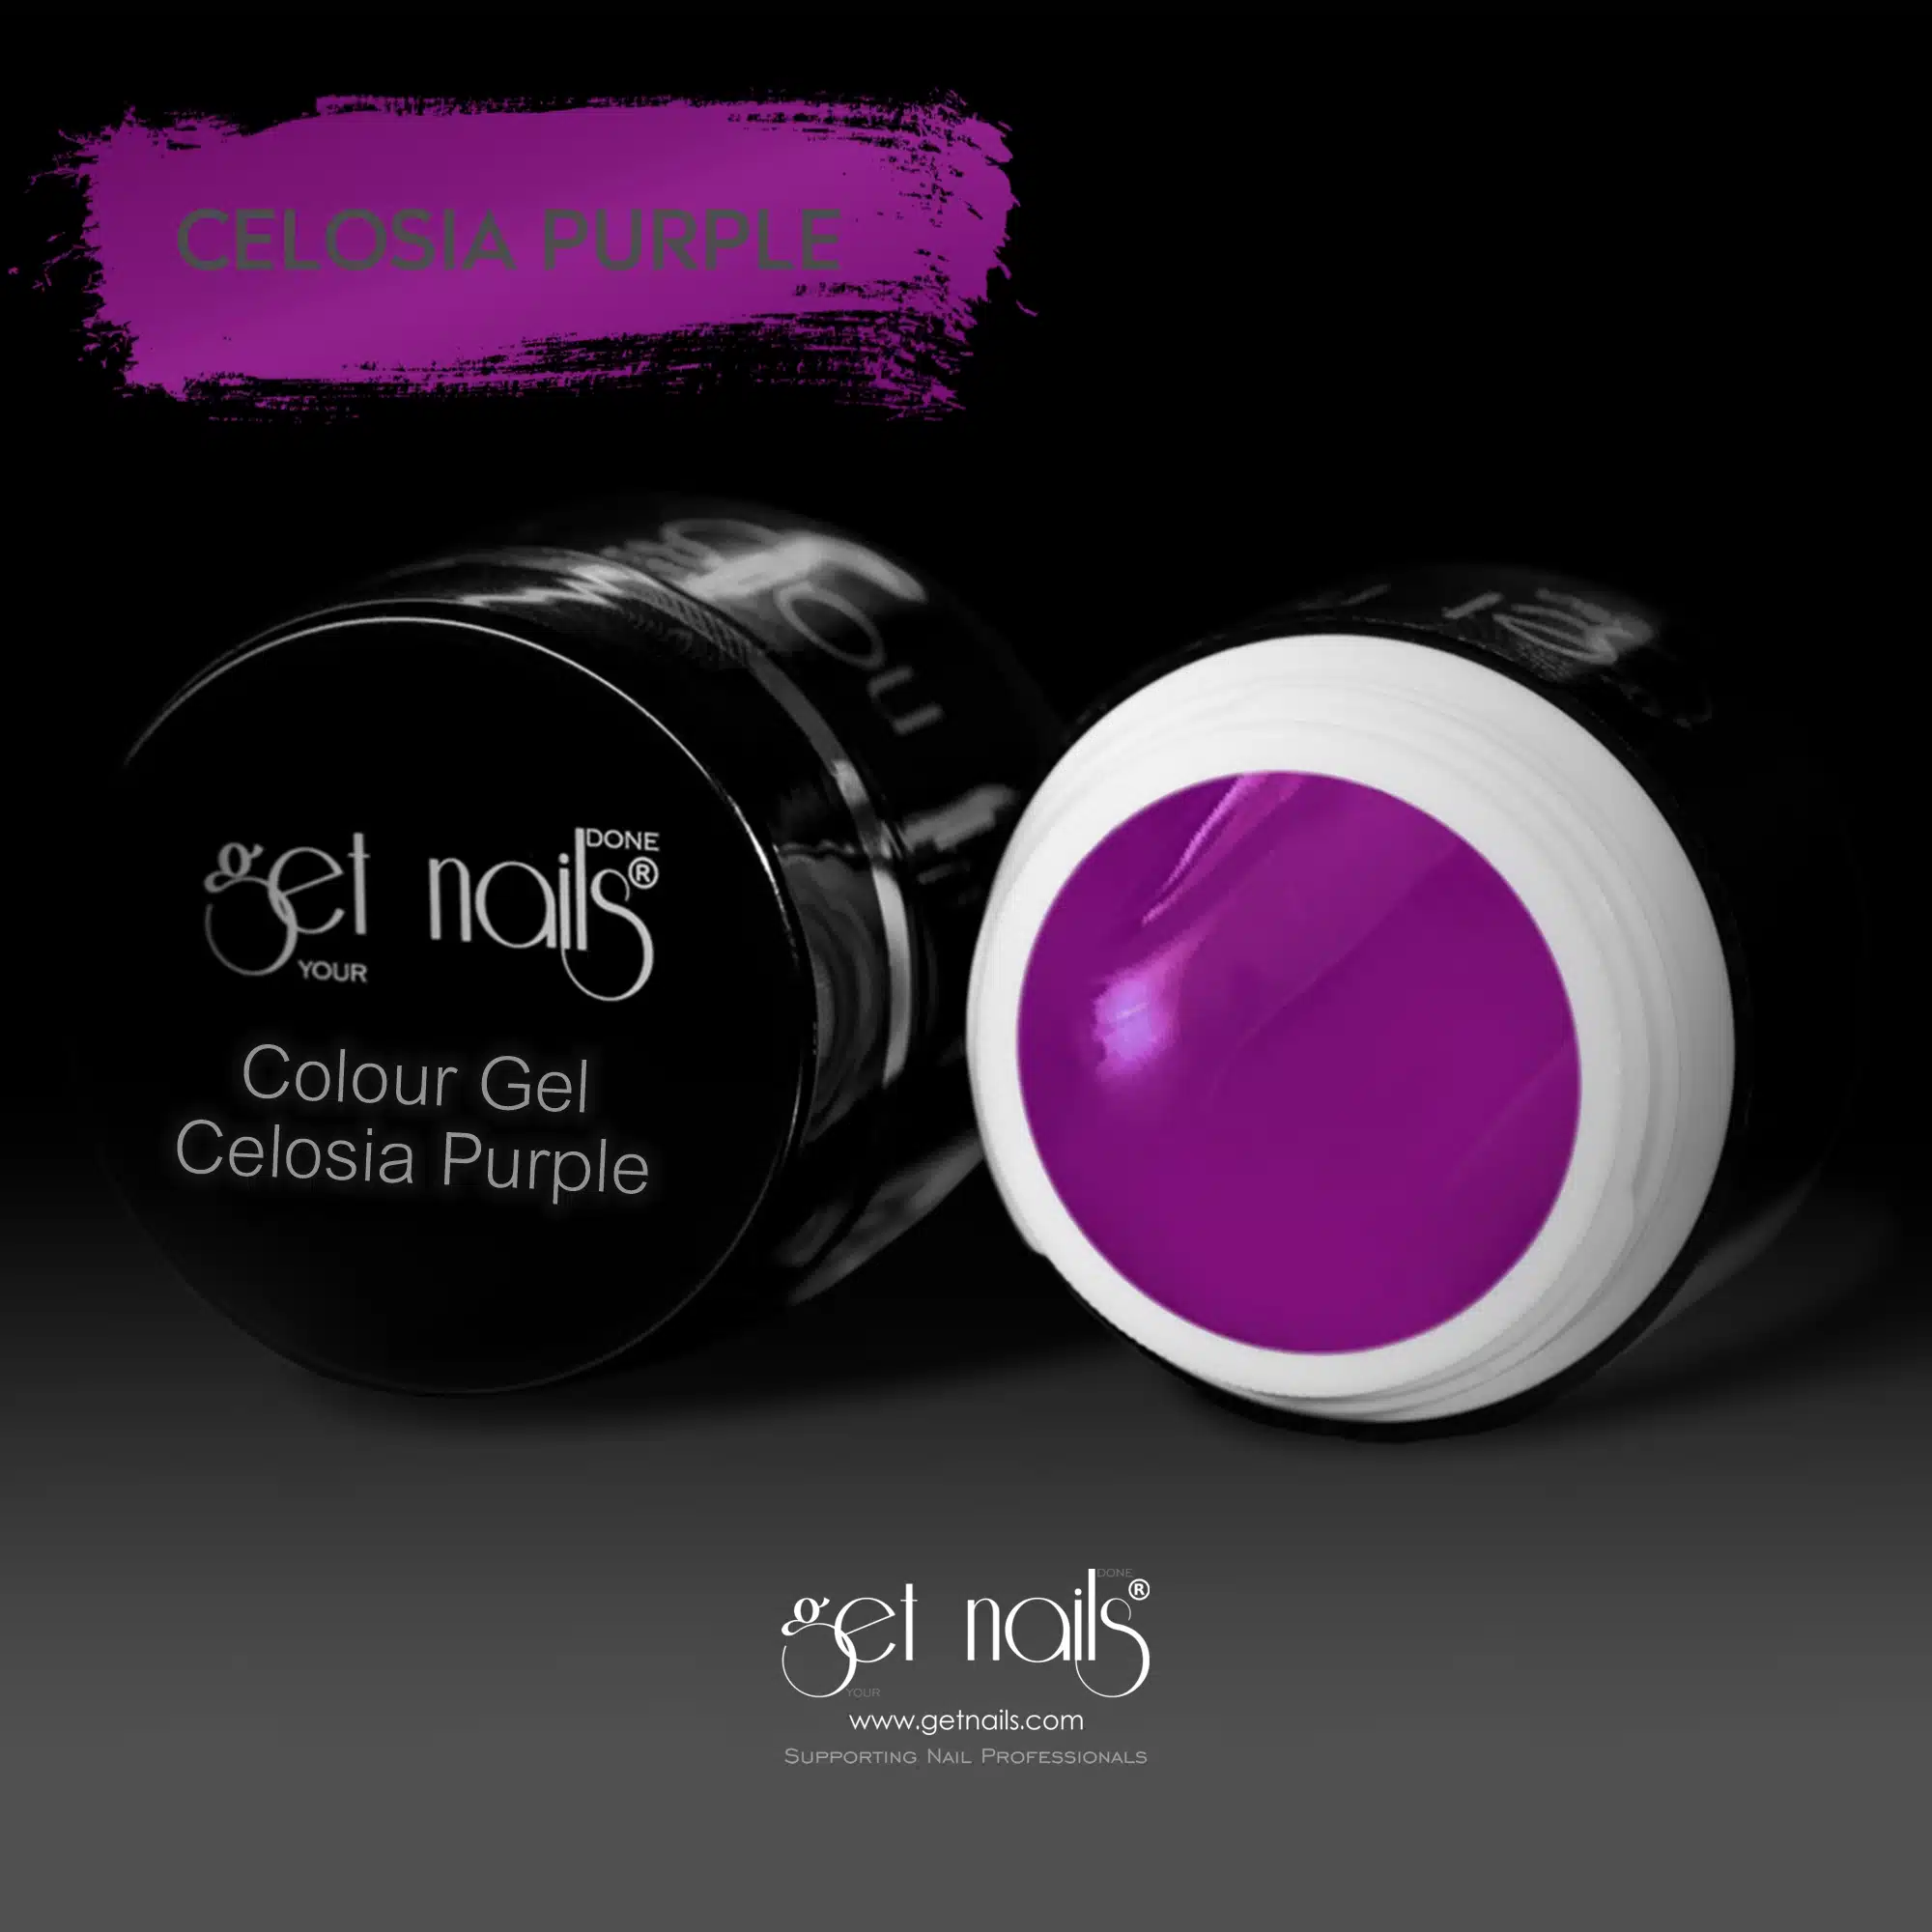 Get Nails Austria - Colour Gel Celosia Purple 5g